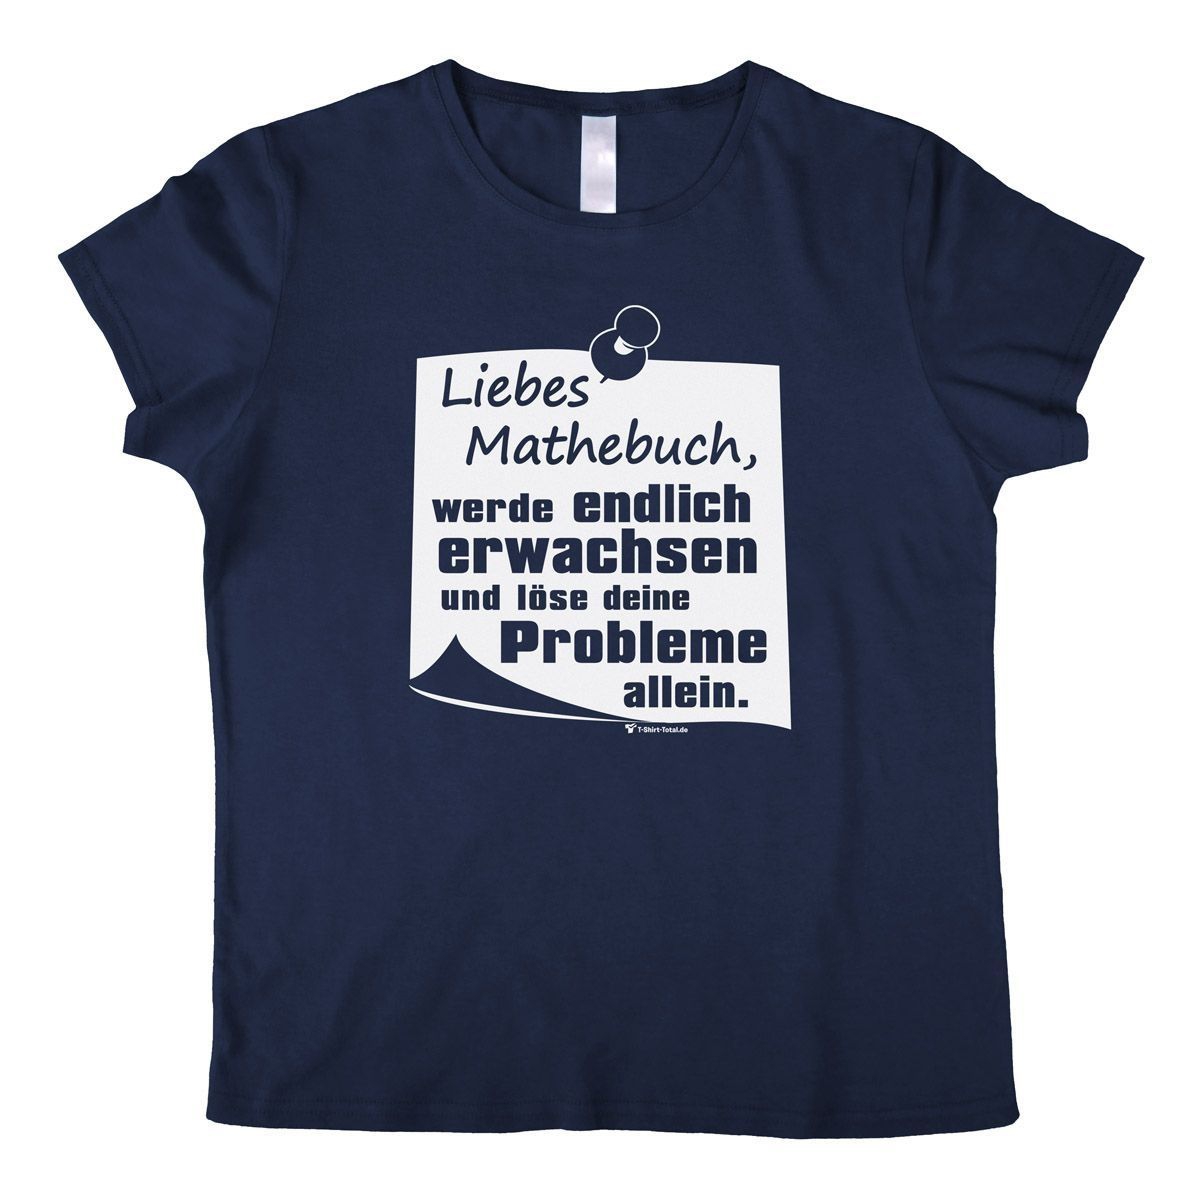 Liebes Mathebuch Woman T-Shirt navy Small